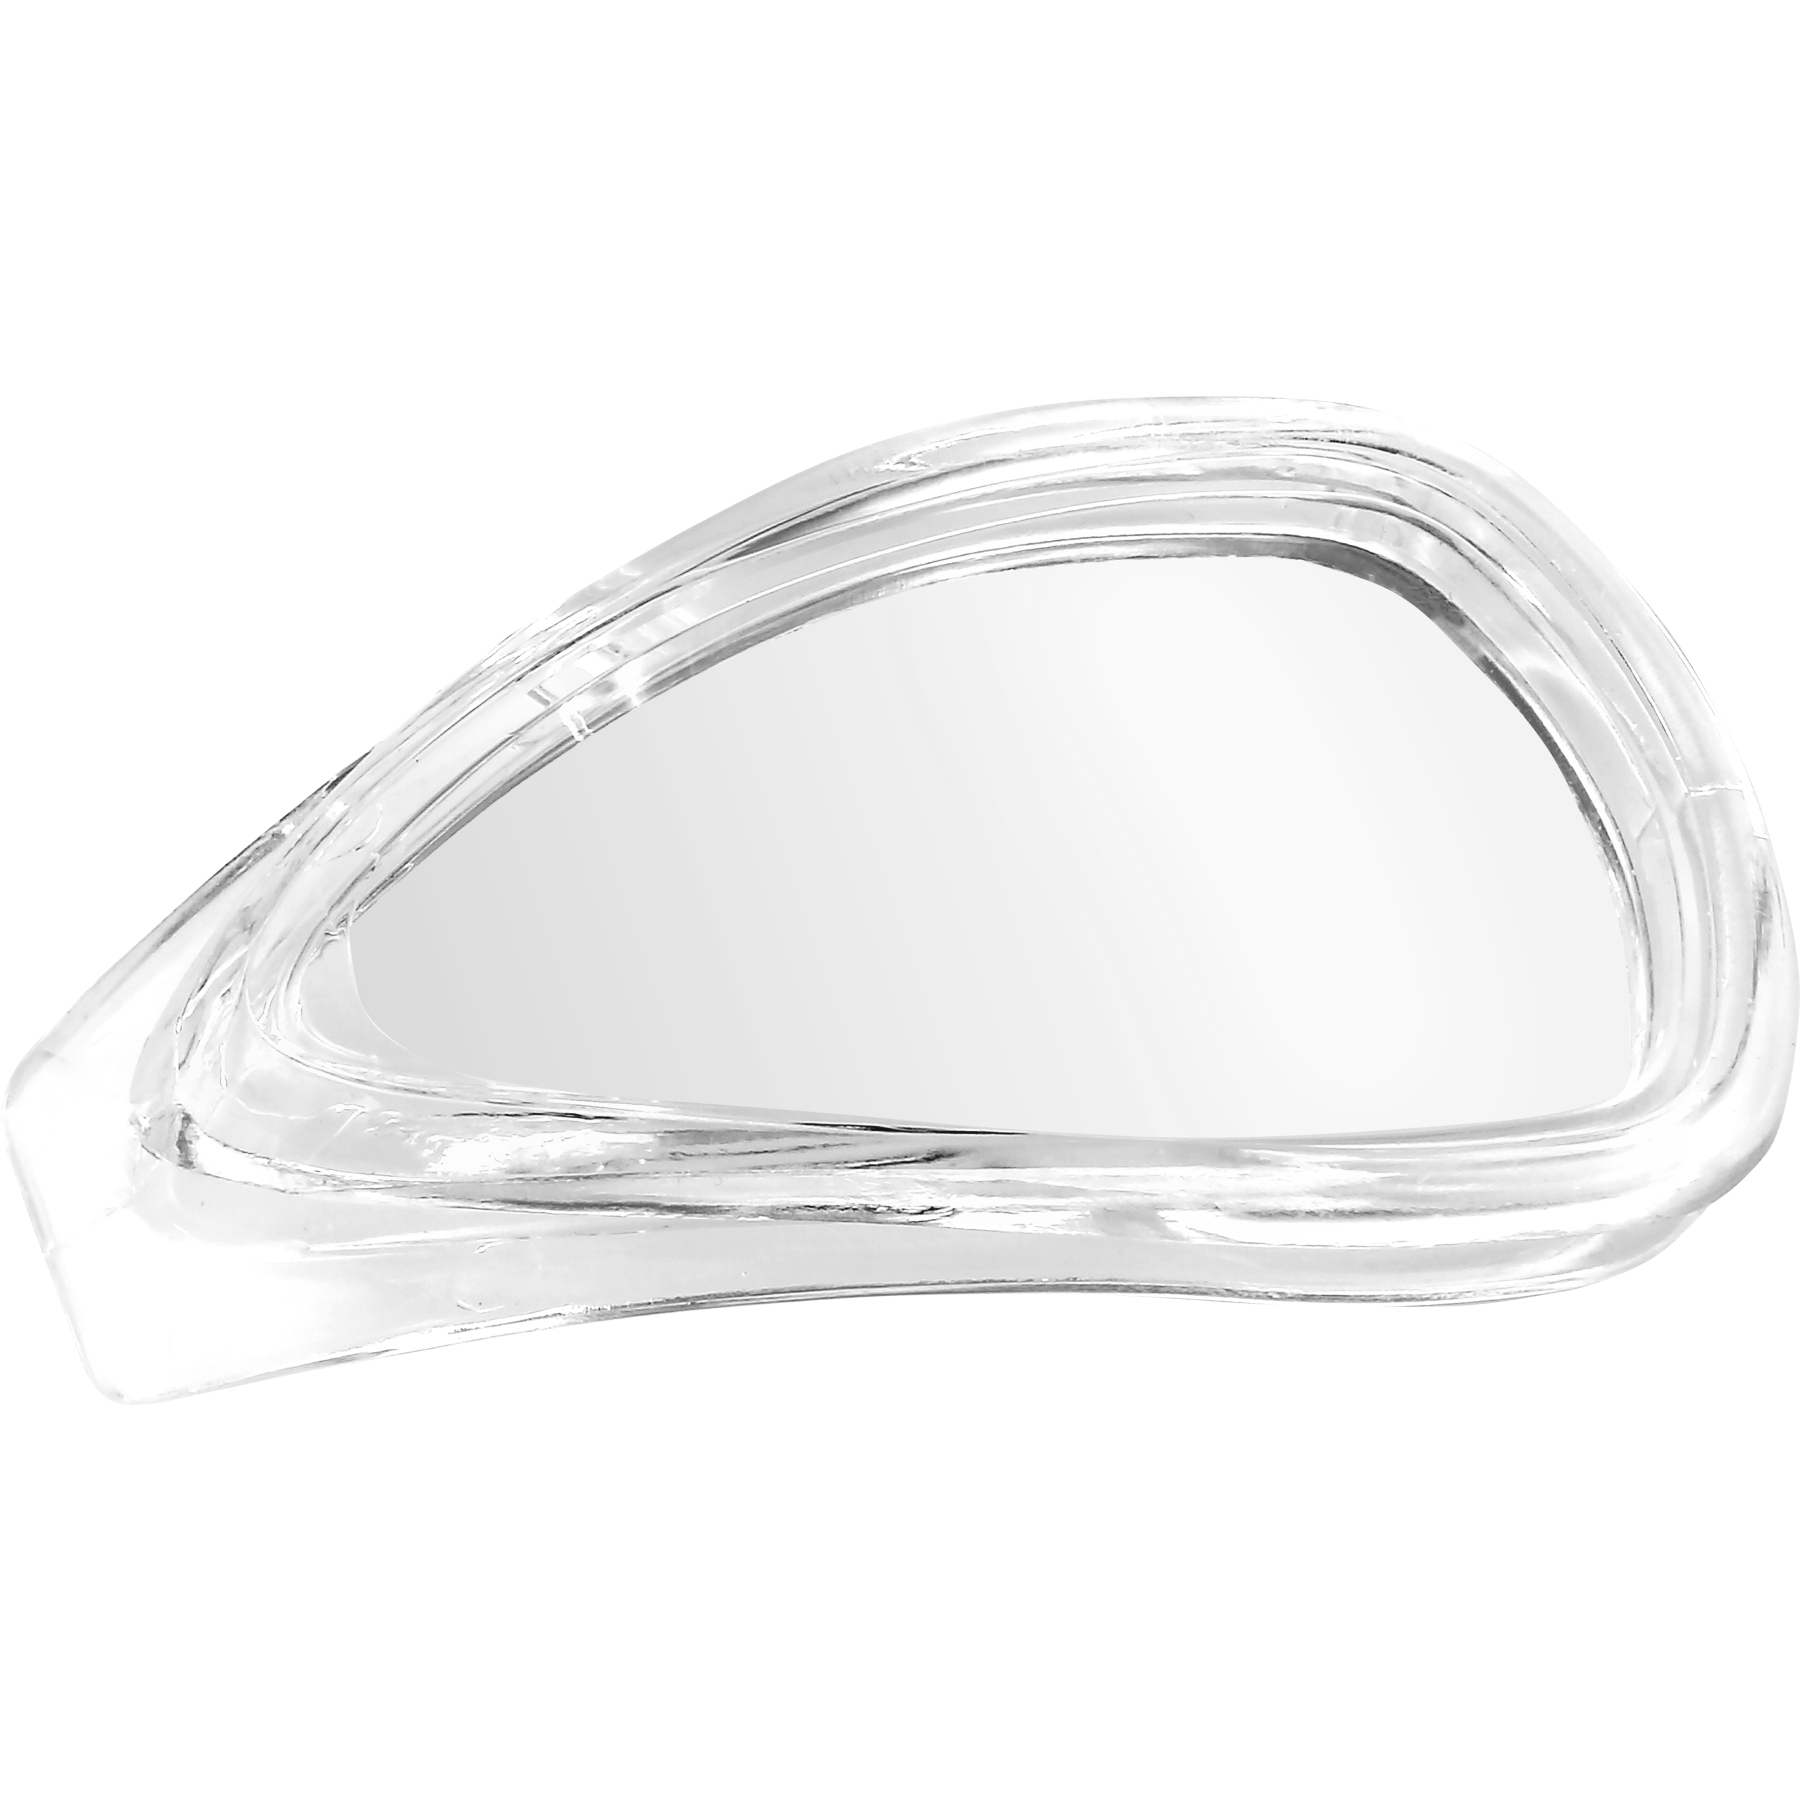 Produktbild von AQUASPHERE Eagle.A Optisches Wechselglas - Klar - Transparent -5.5 Dioptrien